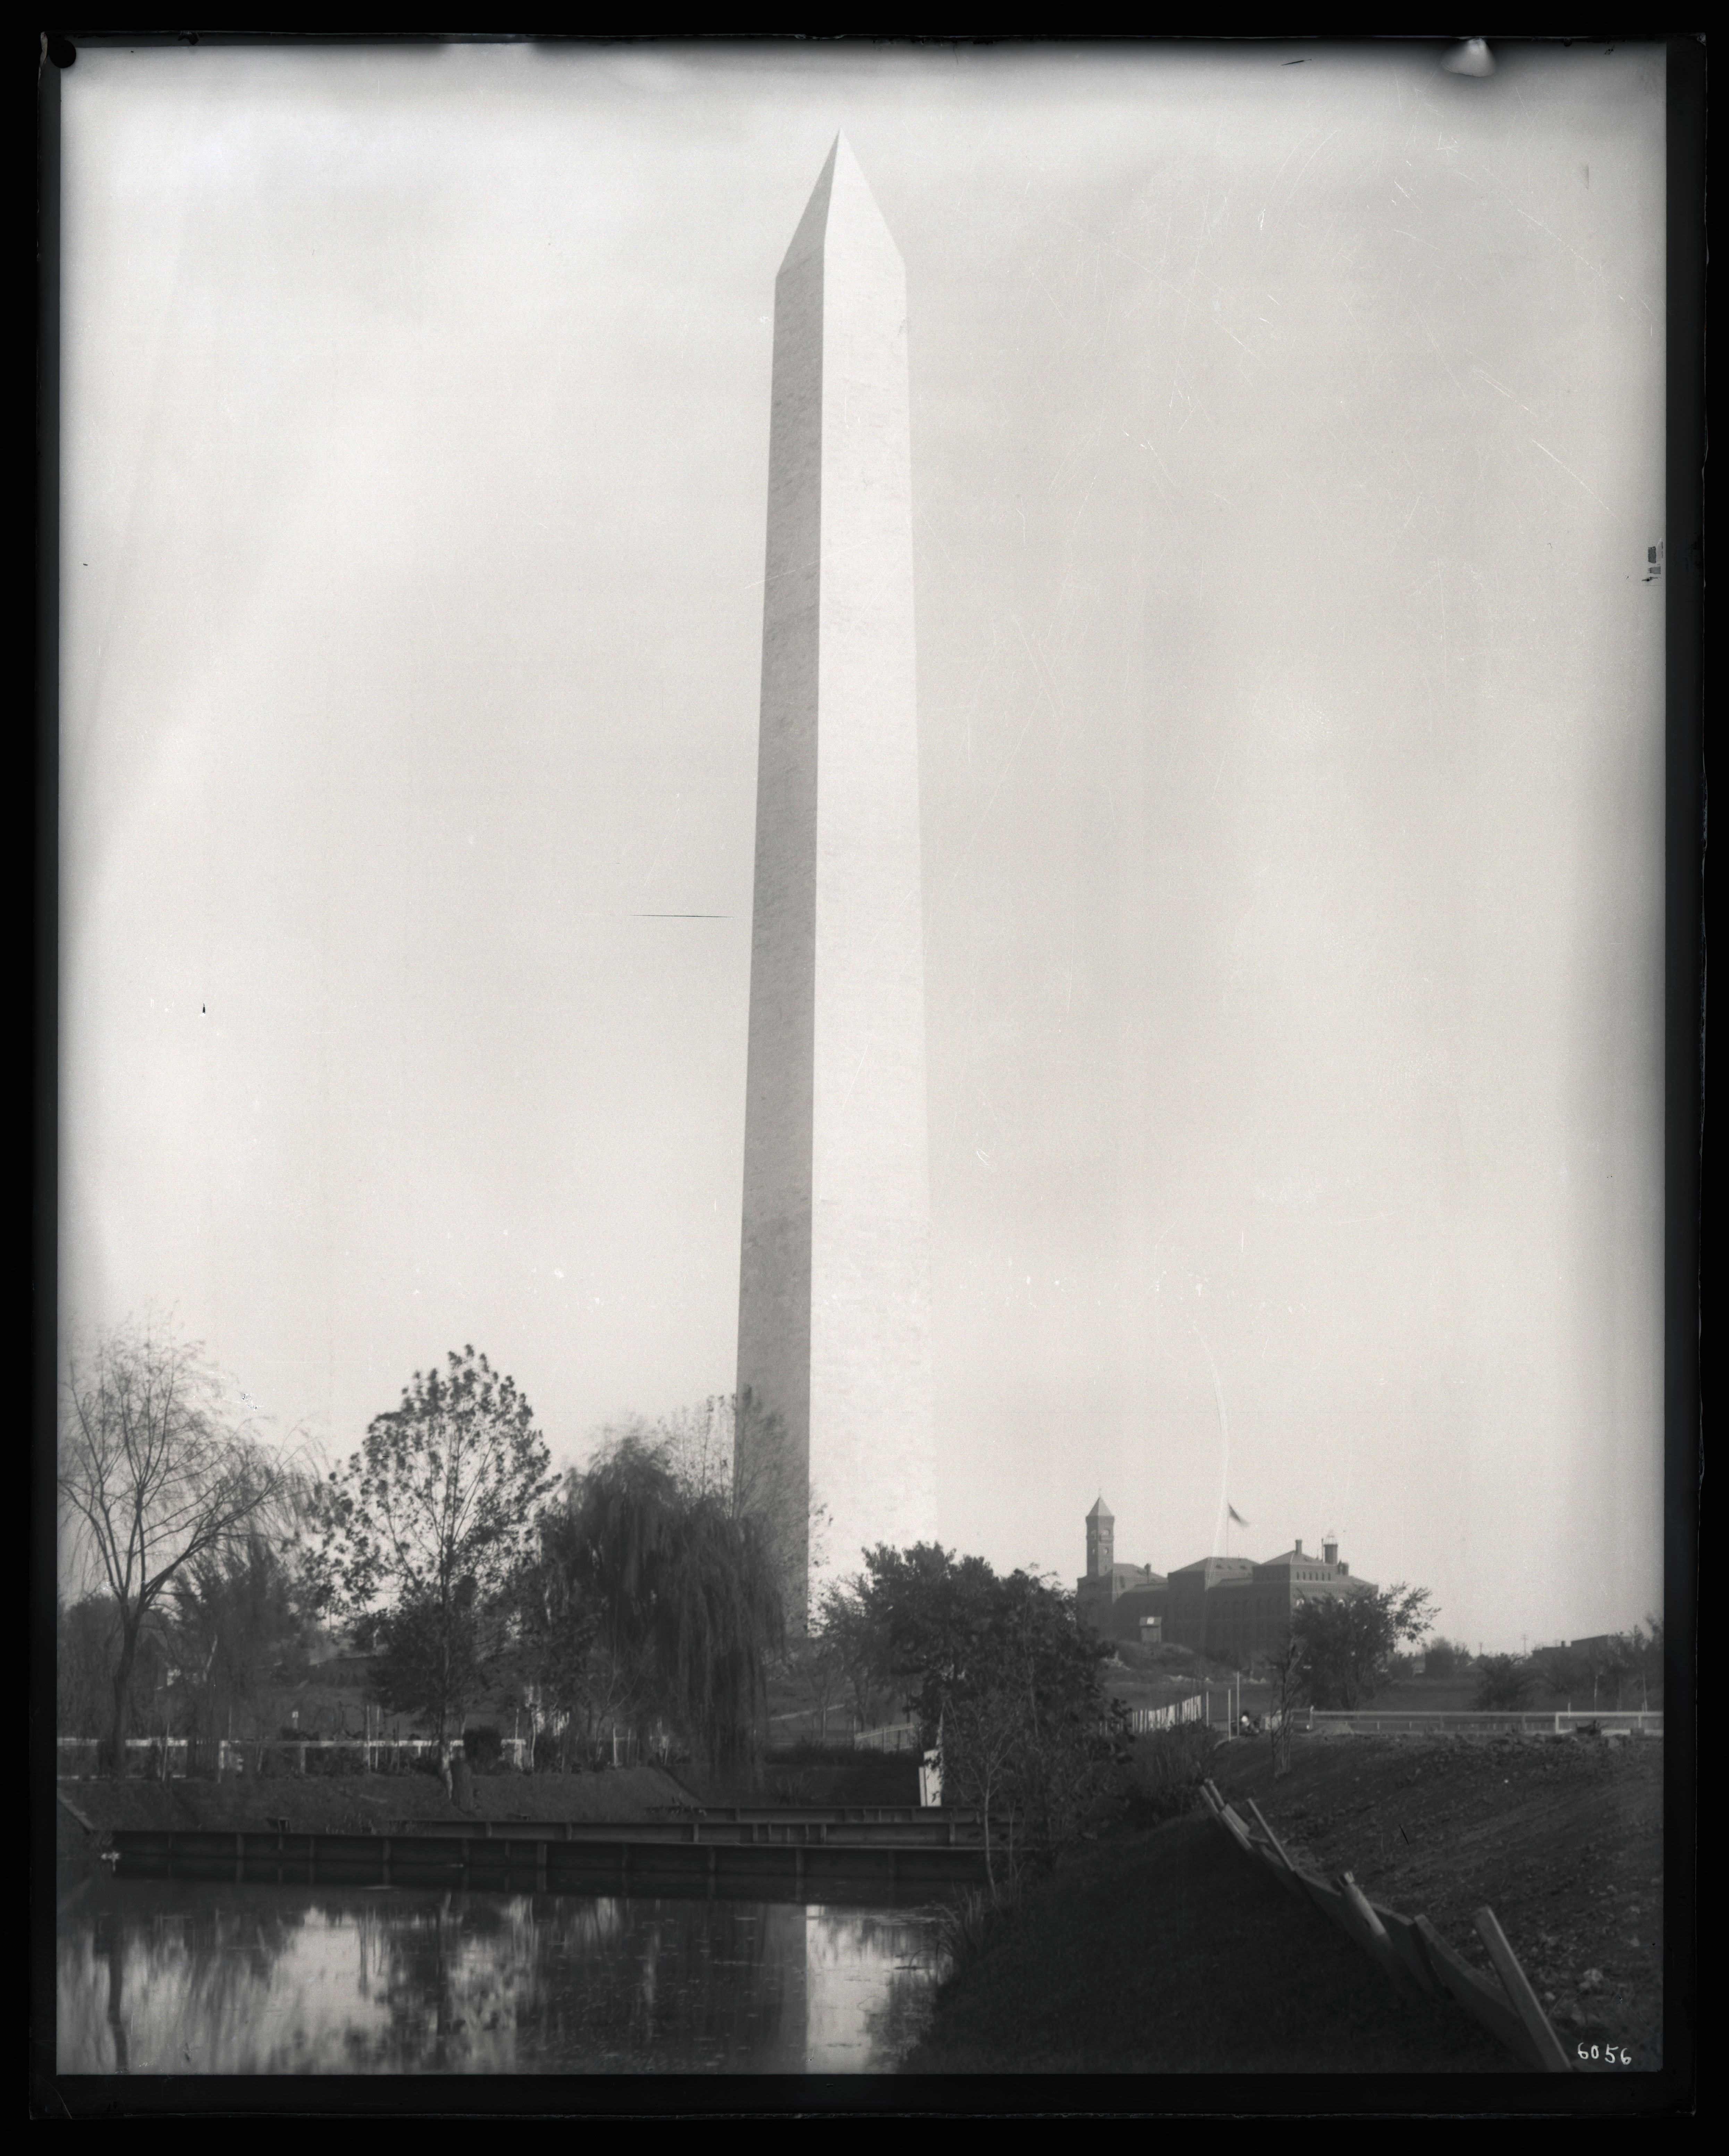 Black and white image of obelisk of Washington Monument.